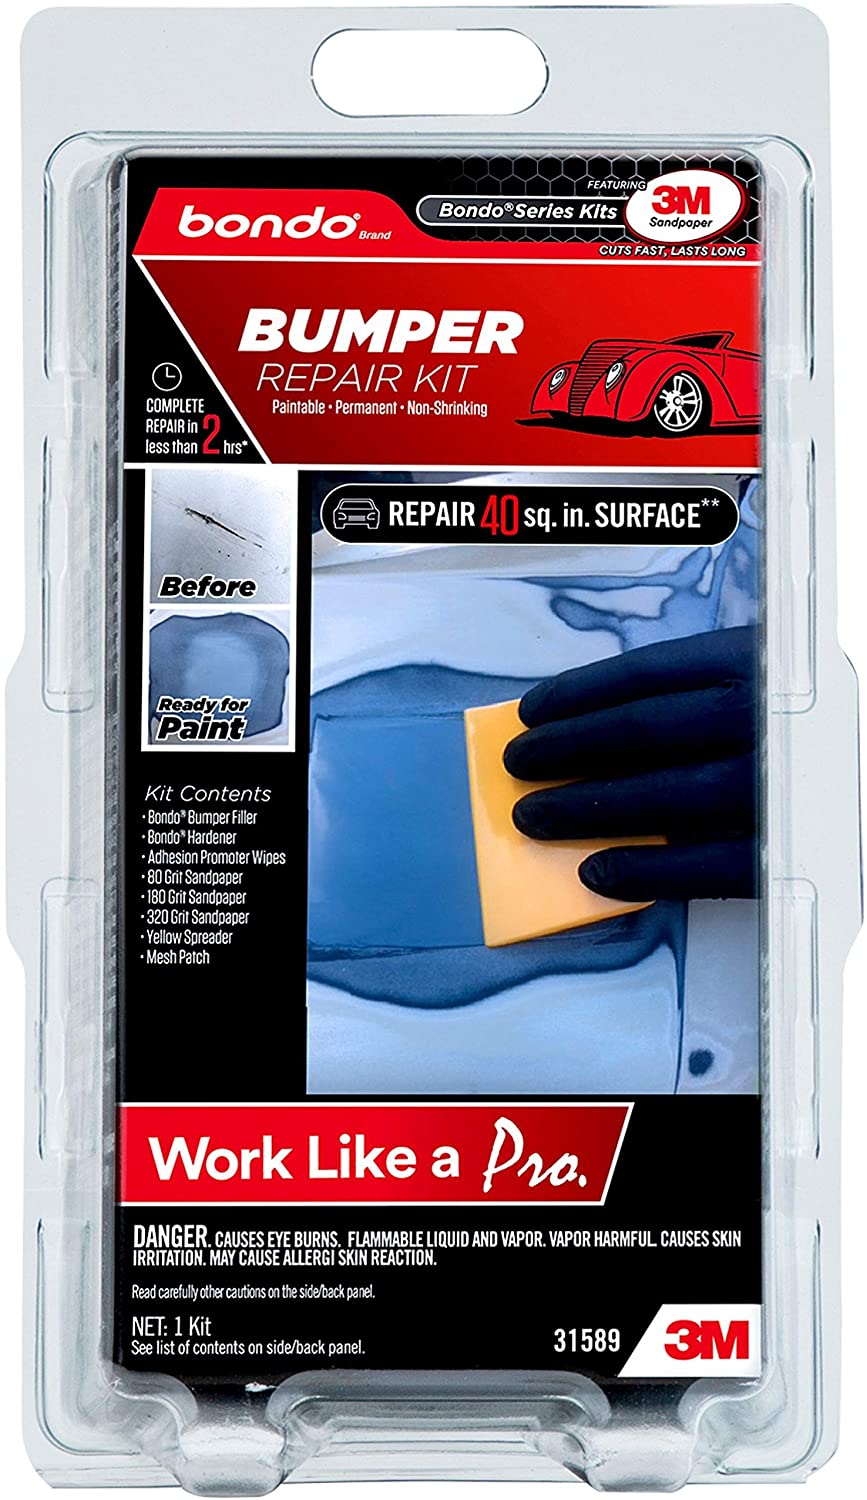 3M Bondo Bumper Repair Kit for Vehicles, Clamshell Pack #31589